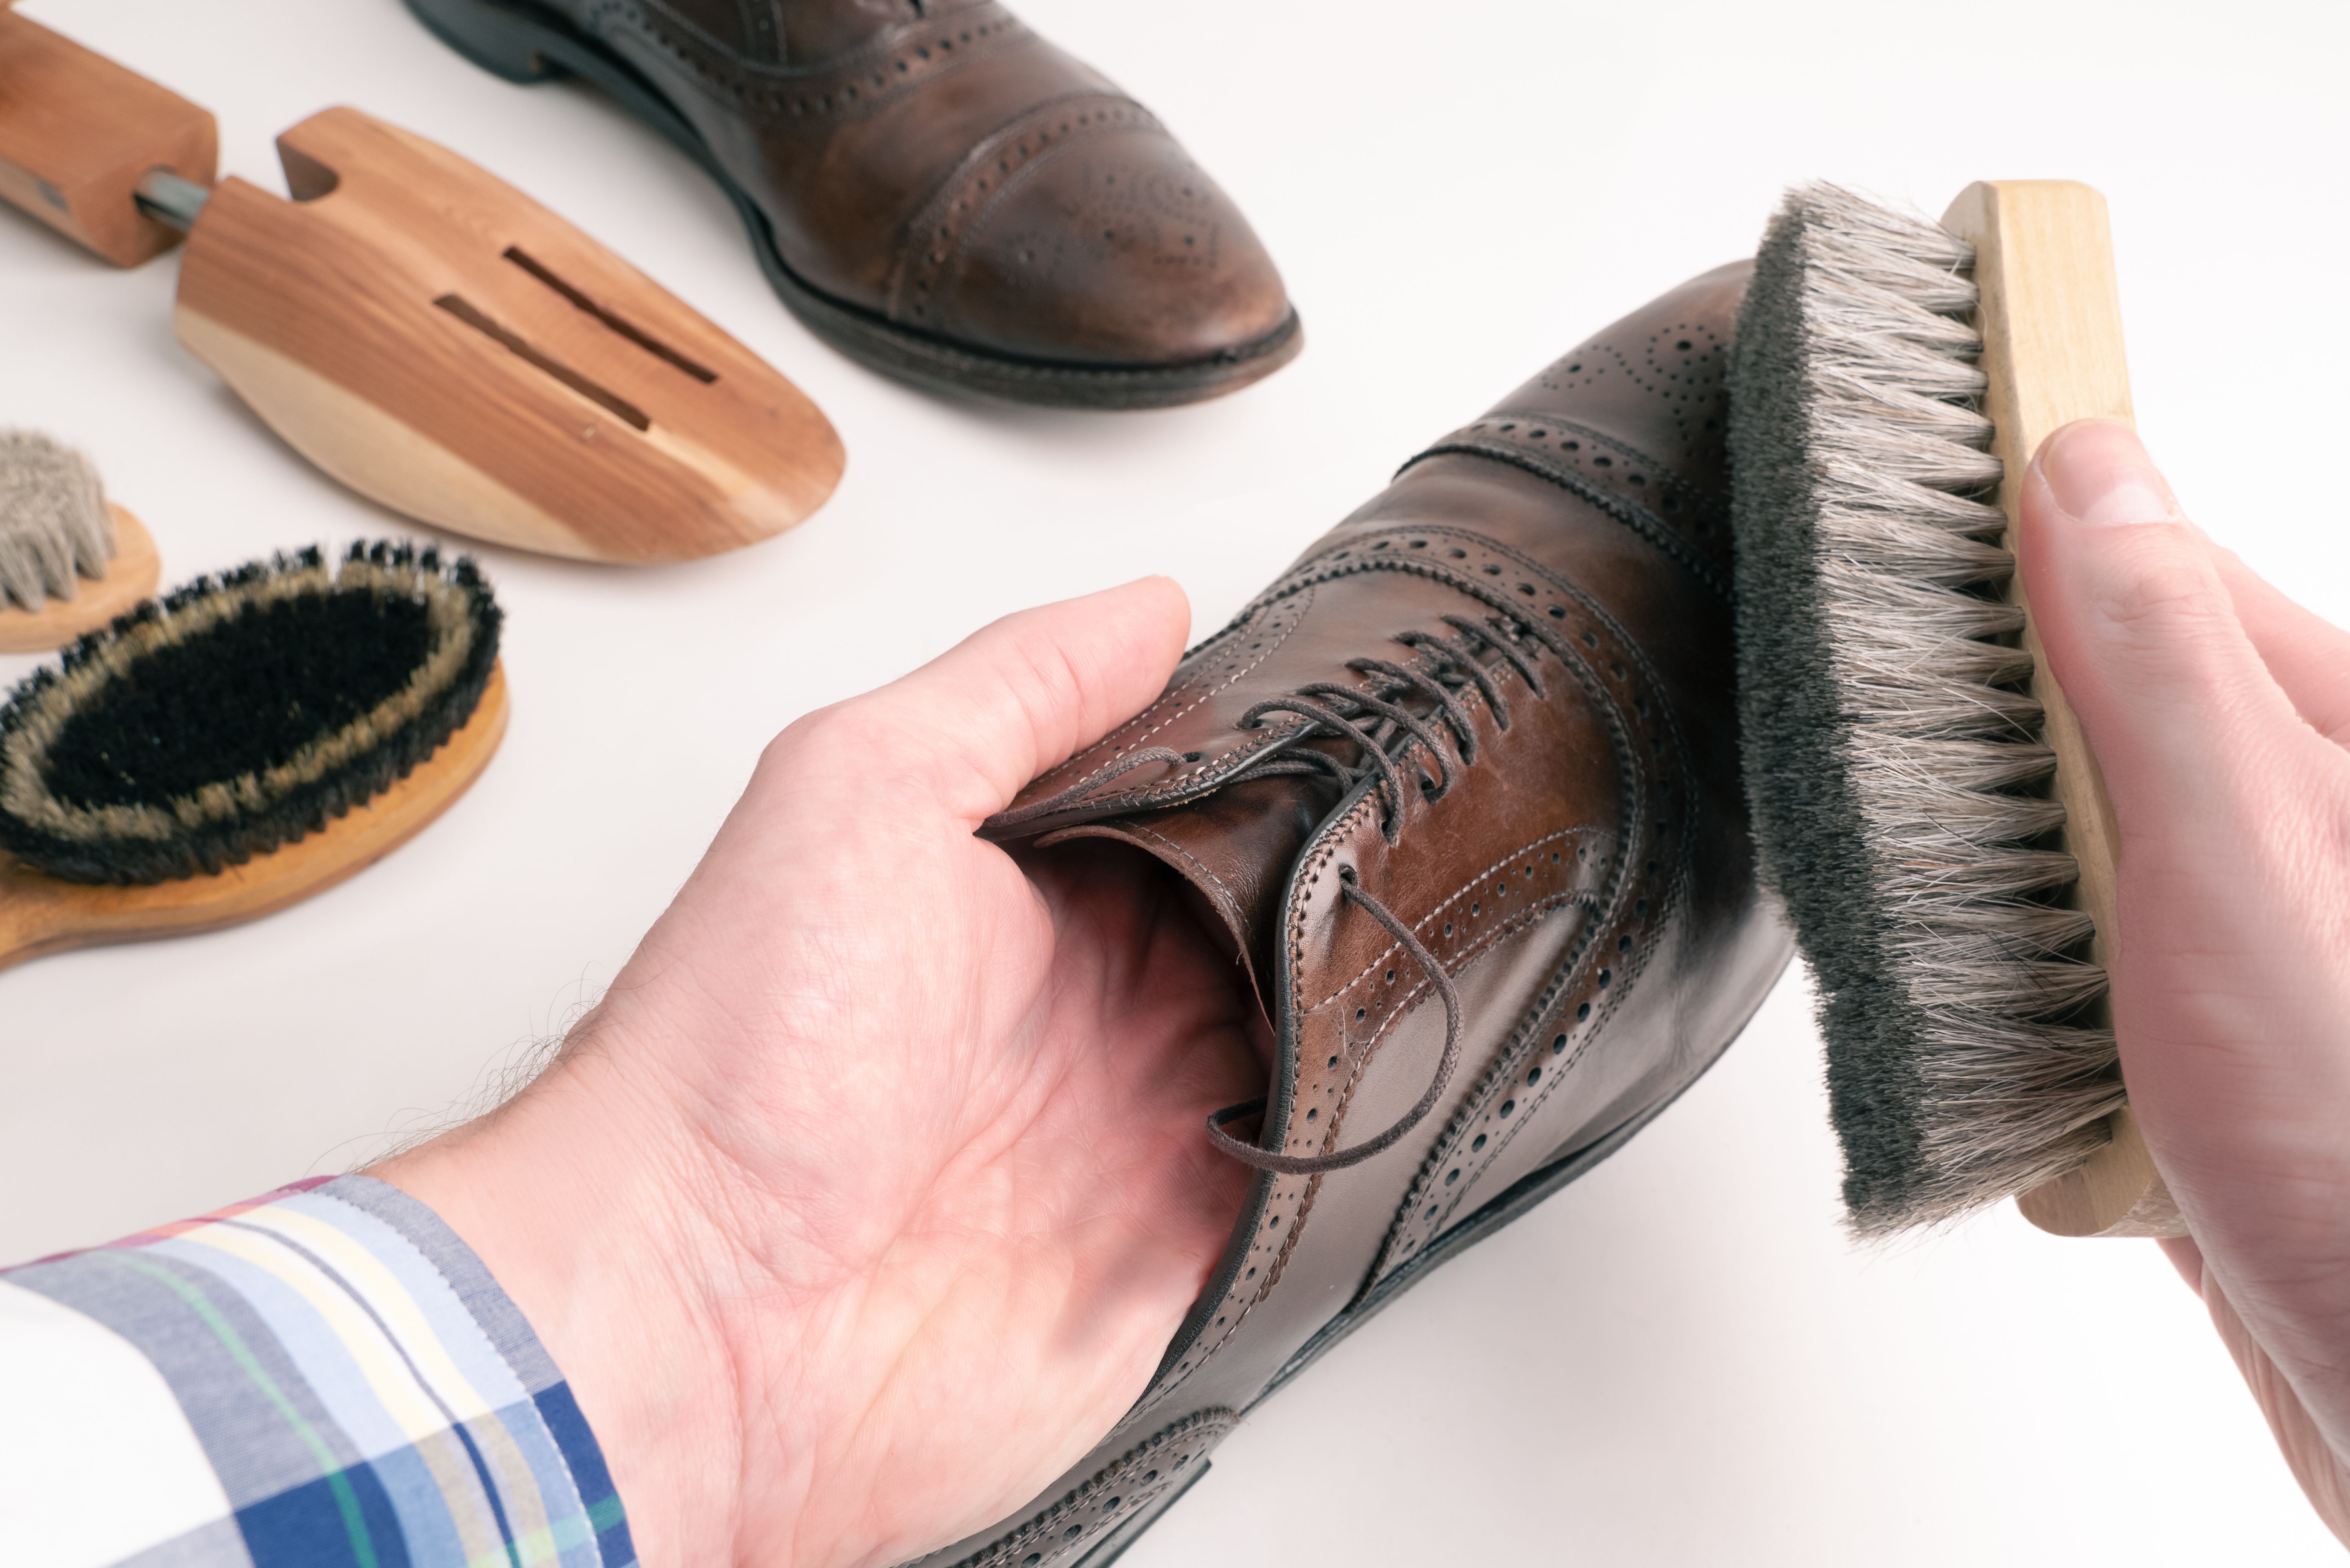 Terciopelo, ante, charol, raso... Cómo limpiar los zapatos según el tipo de material. Foto: Bigstock